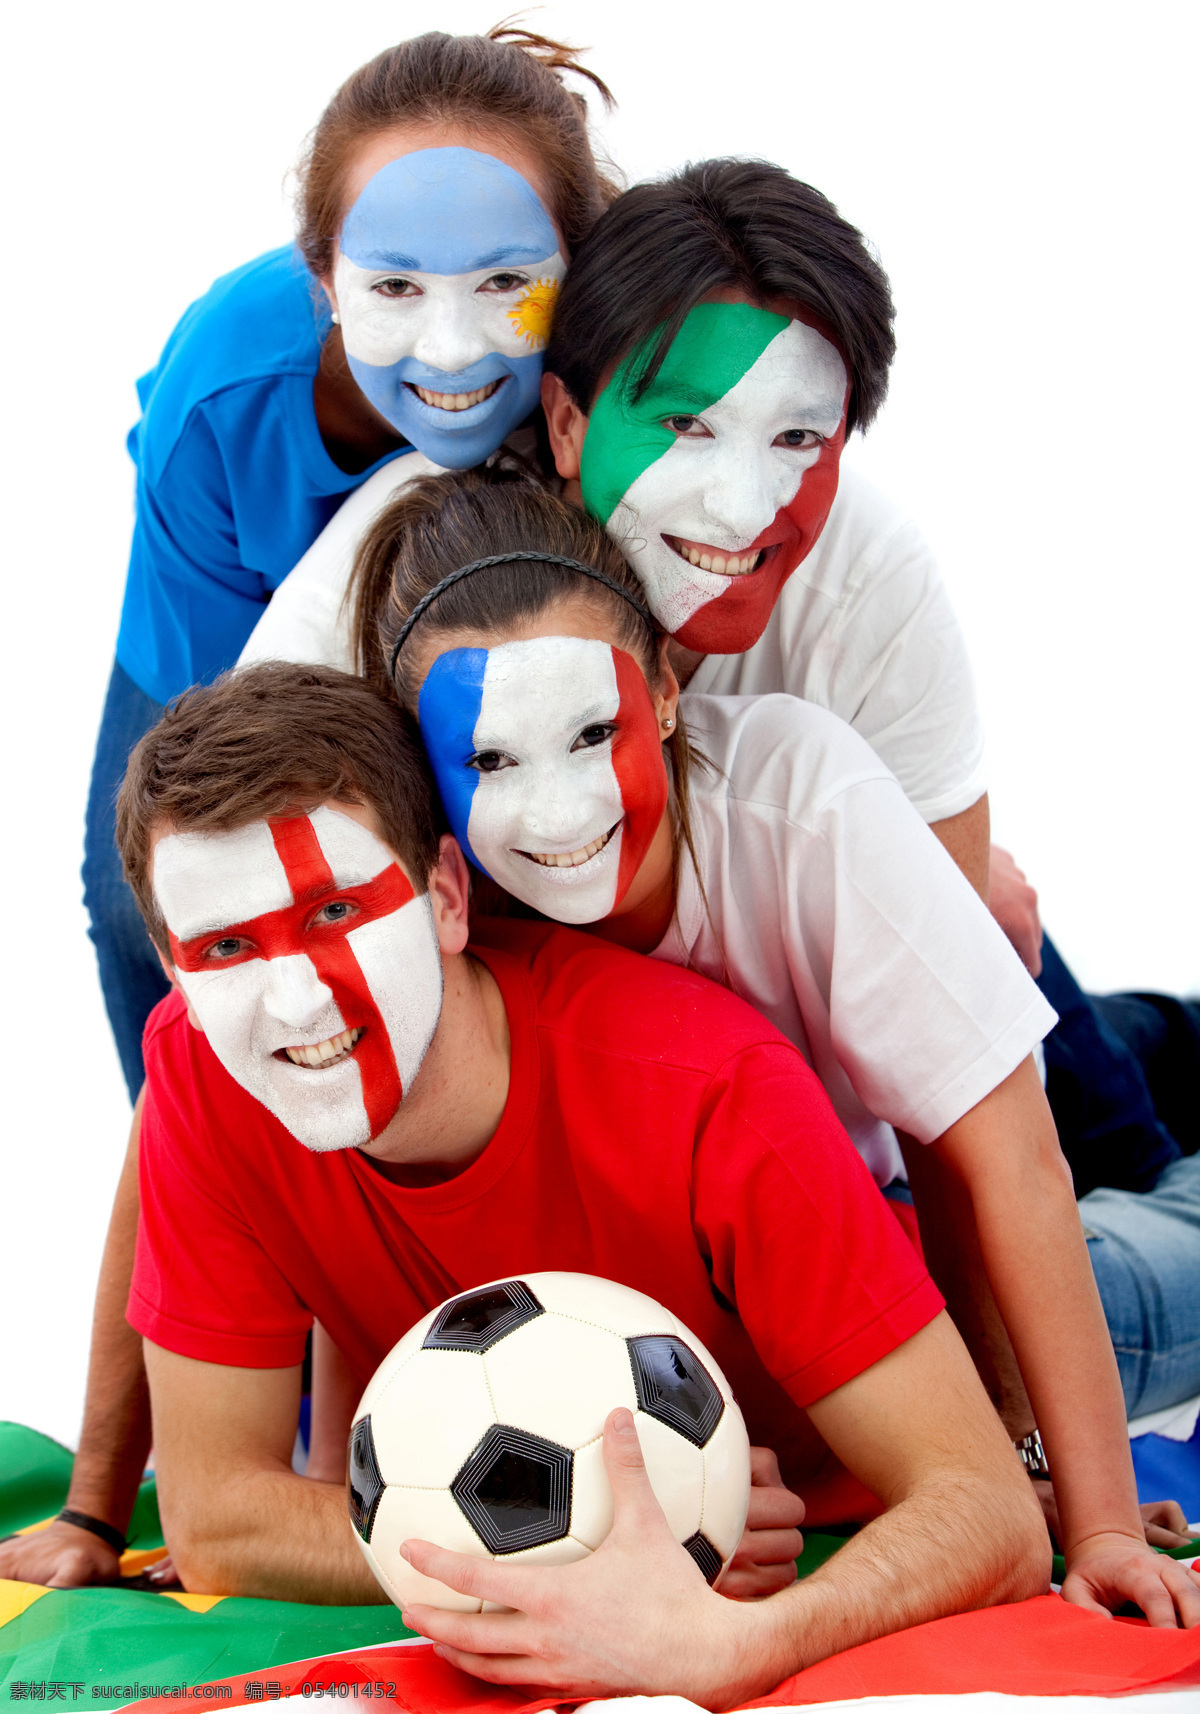 足球 足球迷 疯狂 热情 脸部彩绘 体育运动 生活百科 白色